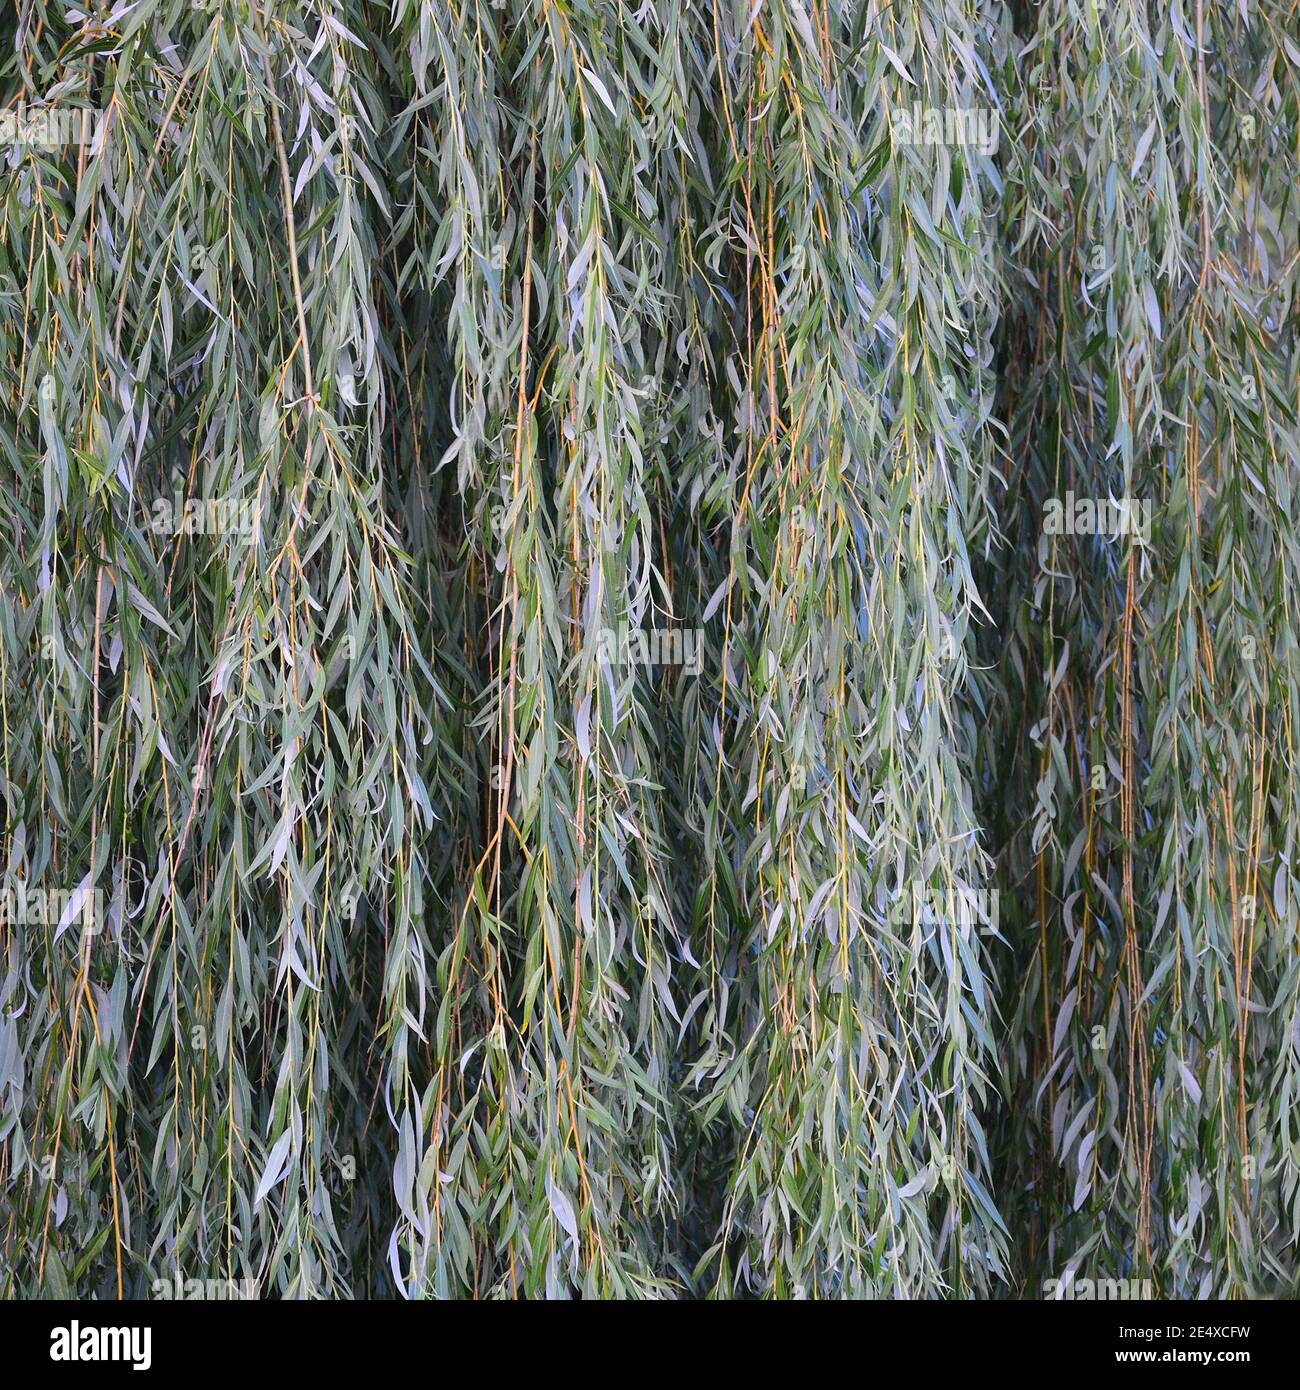 Weiße Weidenzweige (salix alba), großes, detailliertes vertikales Blattmuster in Nahaufnahme, grüne Ast-Textur im Detail, Salicin-Konzept Stockfoto